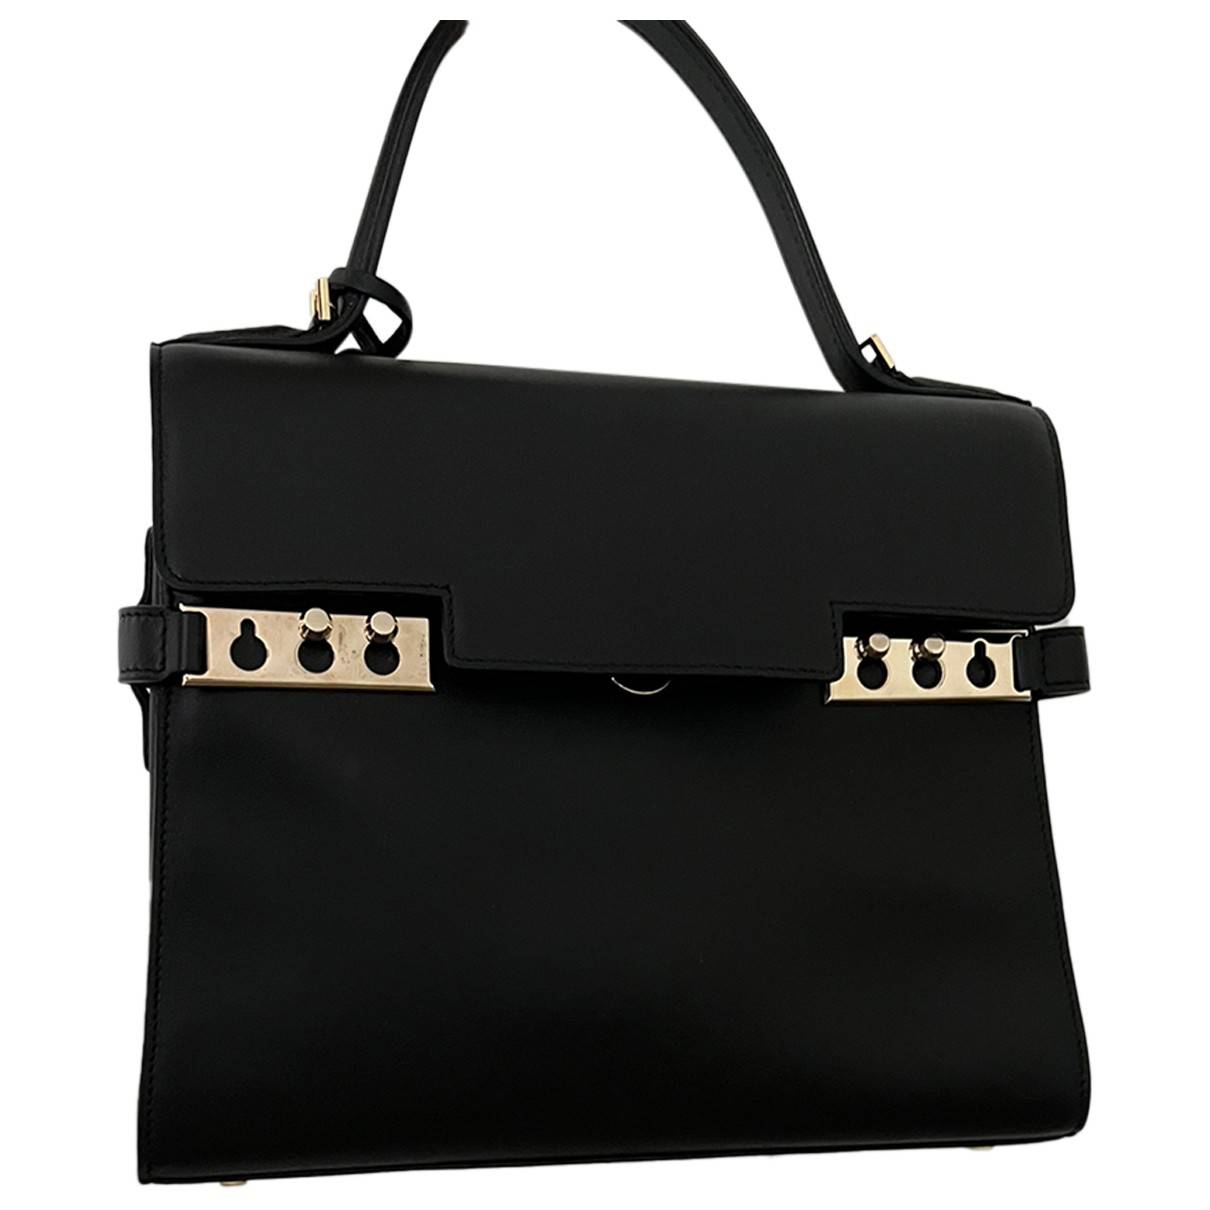 Tempête leather handbag Delvaux Black in Leather - 24582345